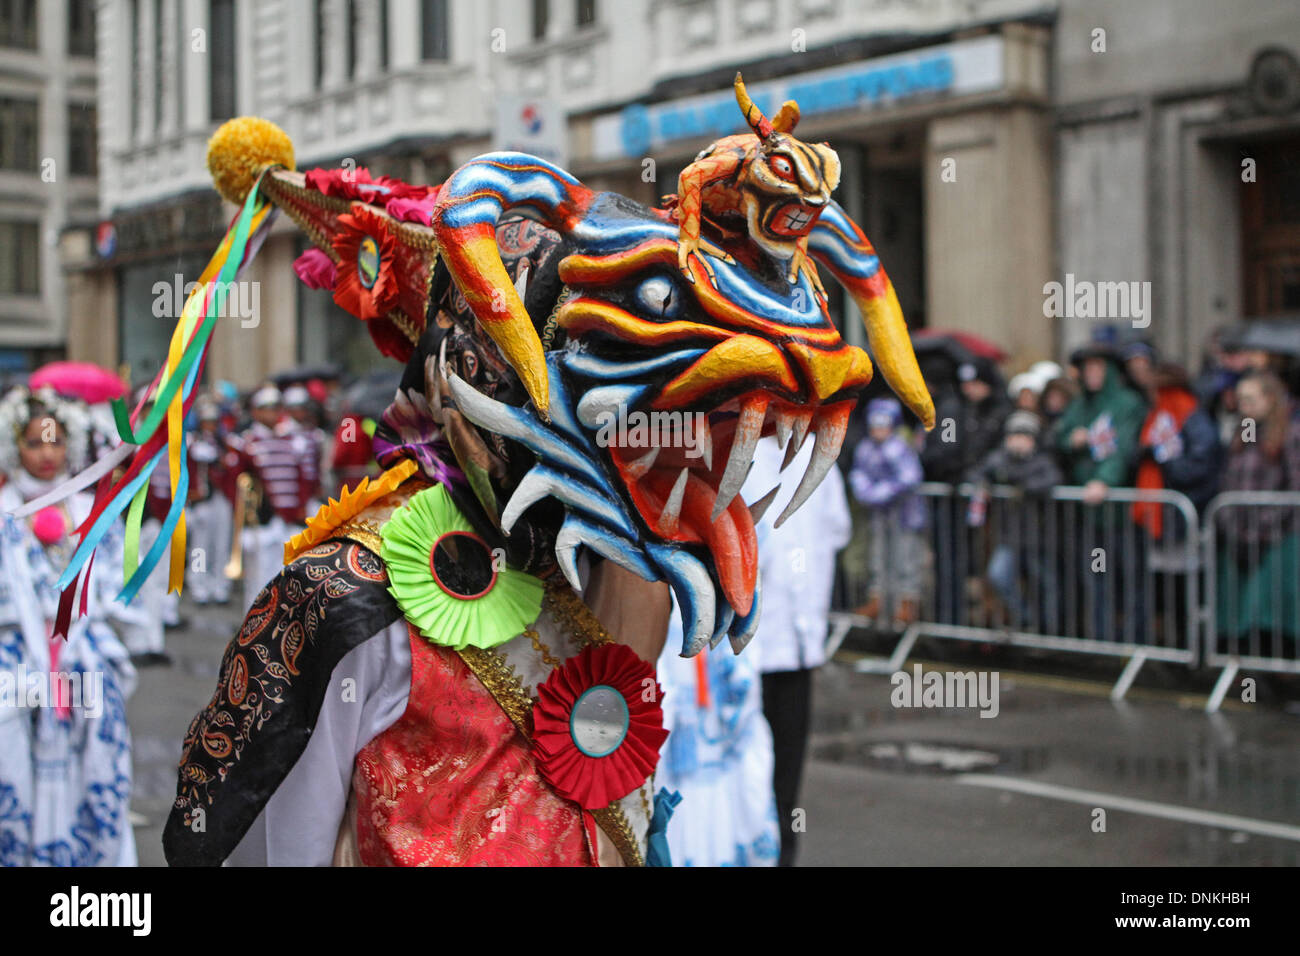 Londres, Reino Unido, 1 de enero de 2014,una colorida máscara en Londres el día de Año Nuevo de 2014 Desfile de crédito: Keith Larby/Alamy Live News Foto de stock